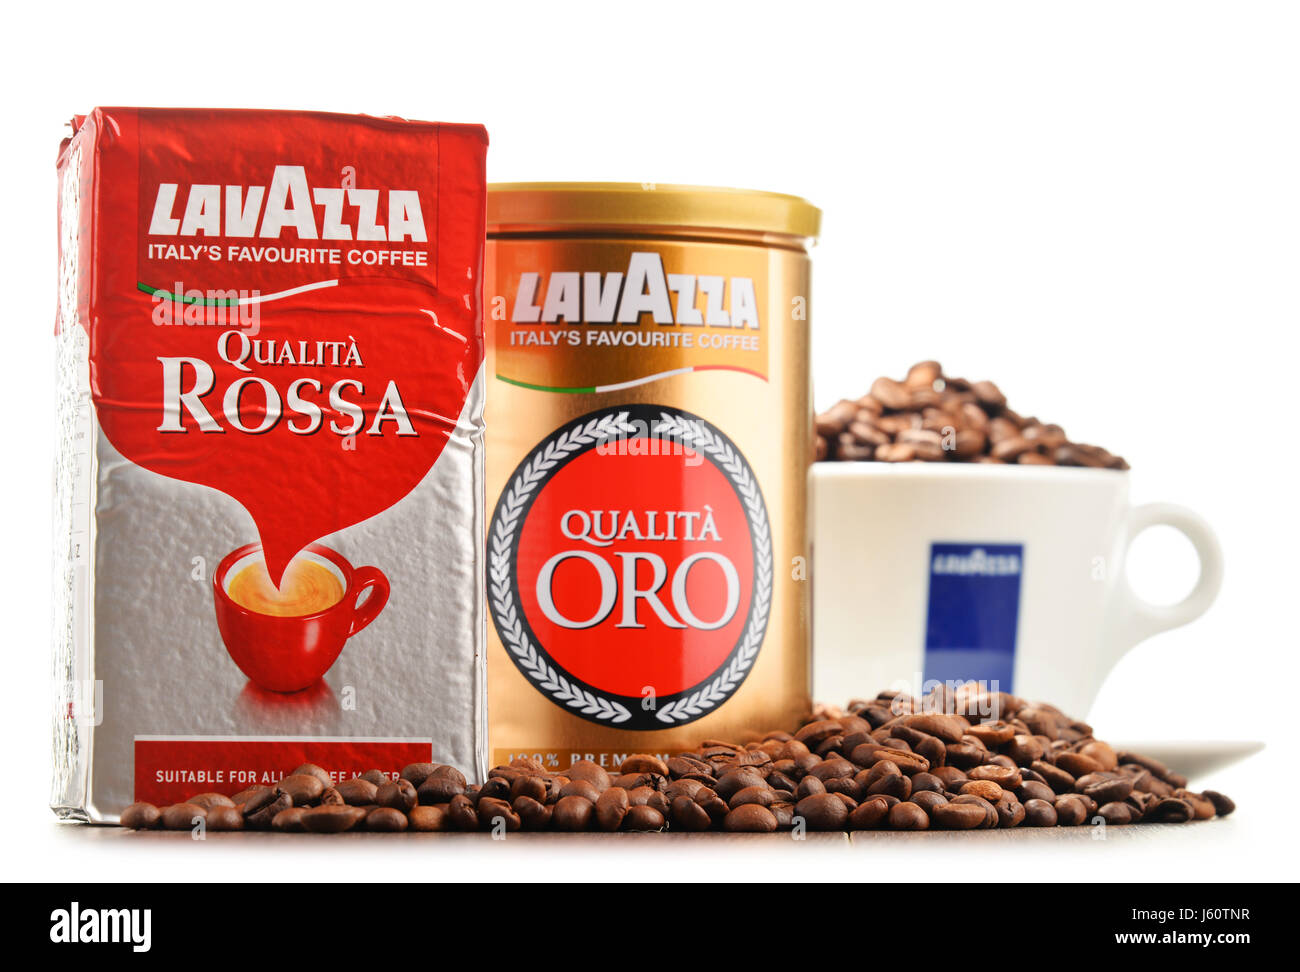 POZNAN, Polen - 12. Oktober 2016: Lavazza ist ein italienischer Hersteller  von Kaffee-Produkte, die es im Jahre 1895 von Luigi Lavazza in Turin  gegründet wurde Stockfotografie - Alamy